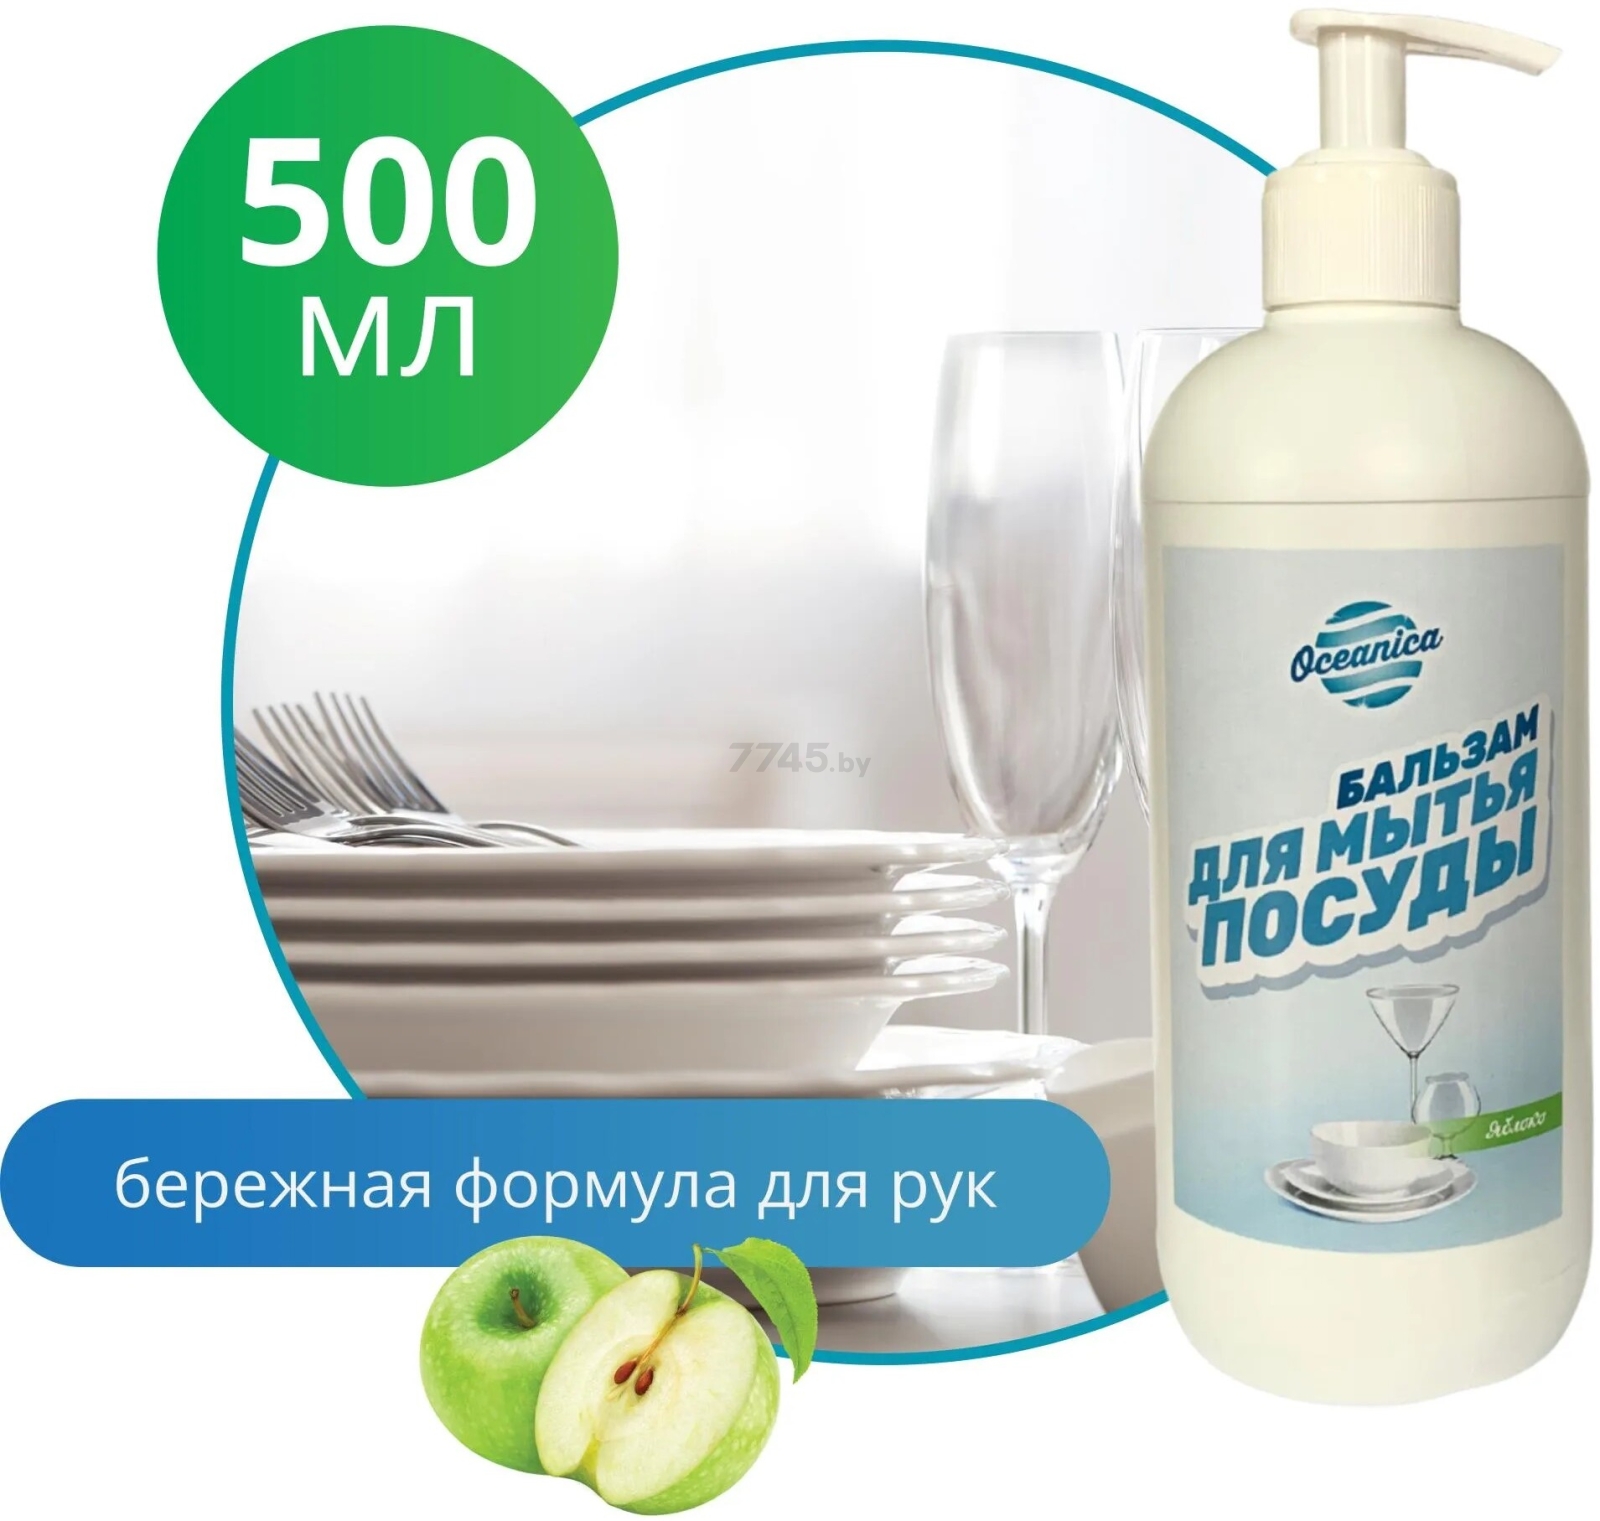 Средство для мытья посуды OCEANICA Яблоко 500 мл (ОС-П 500 д)